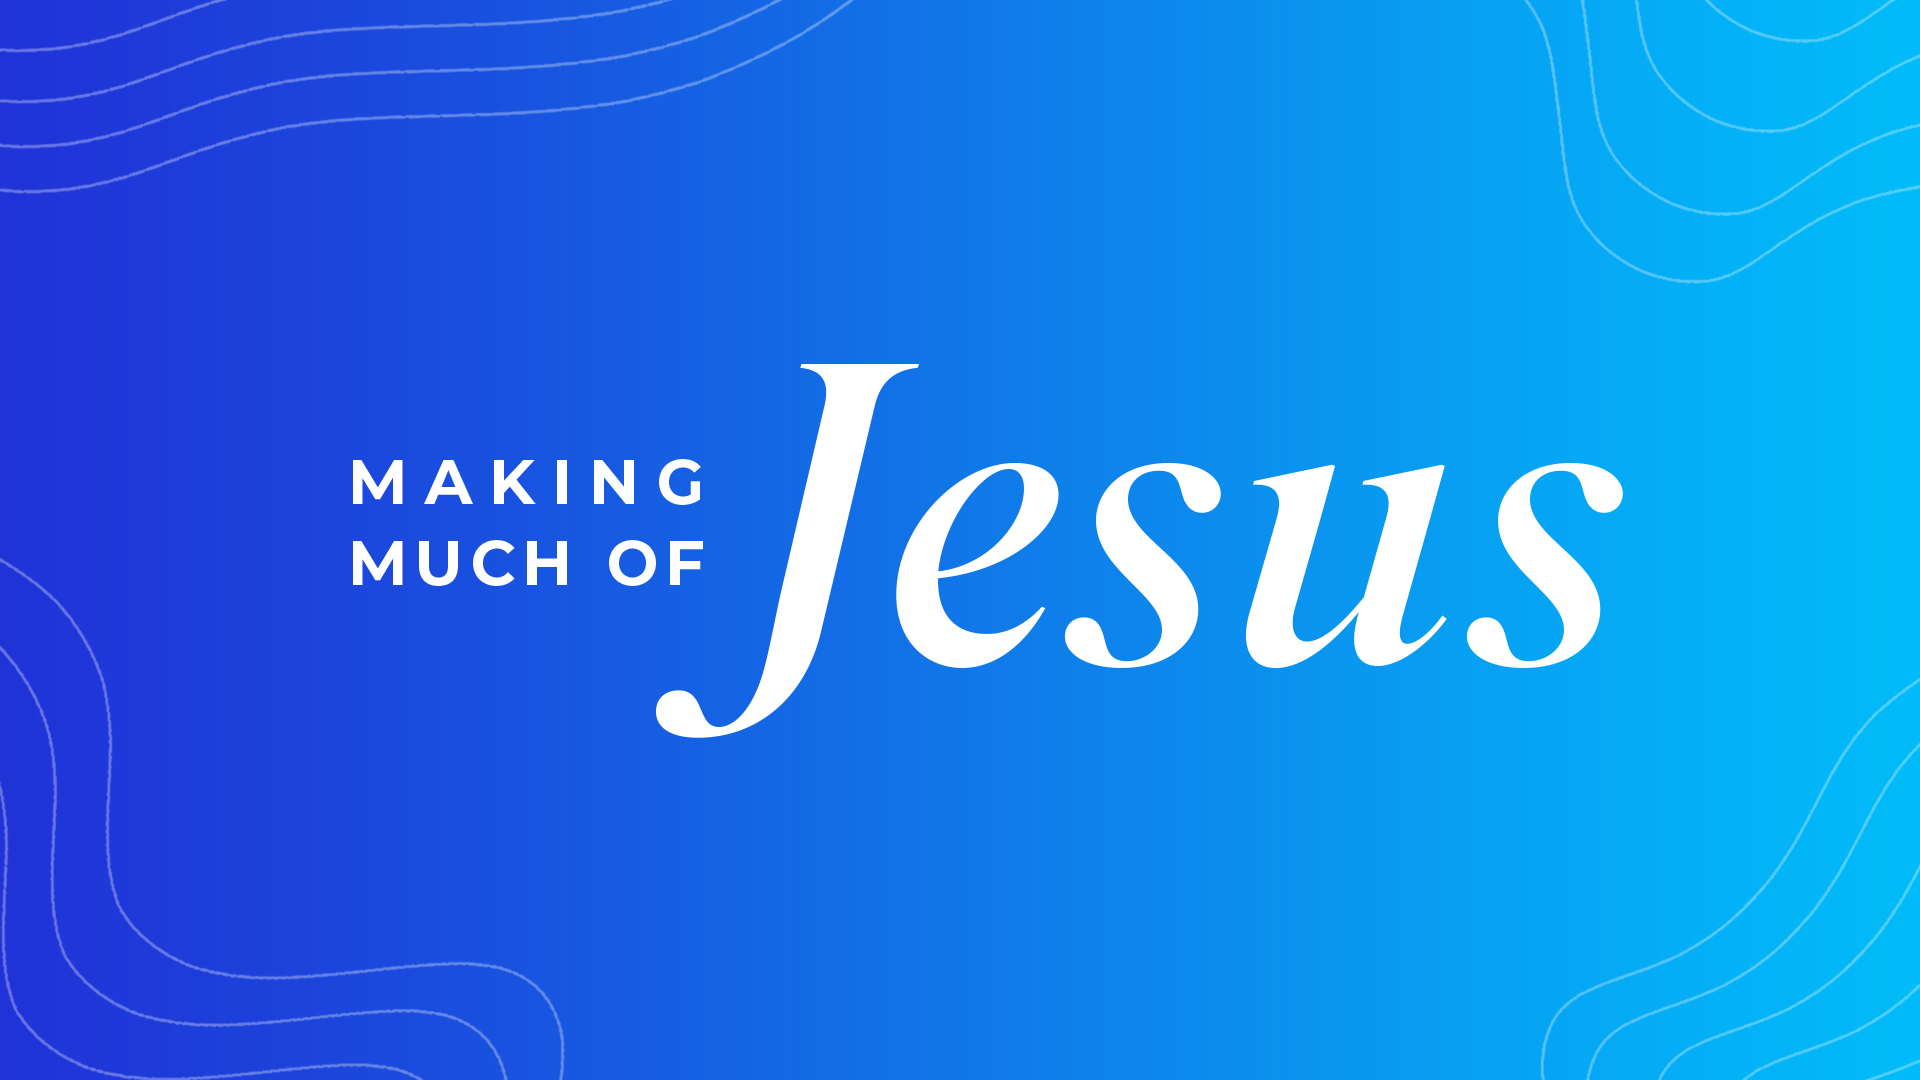 Making Much of Jesus - Work